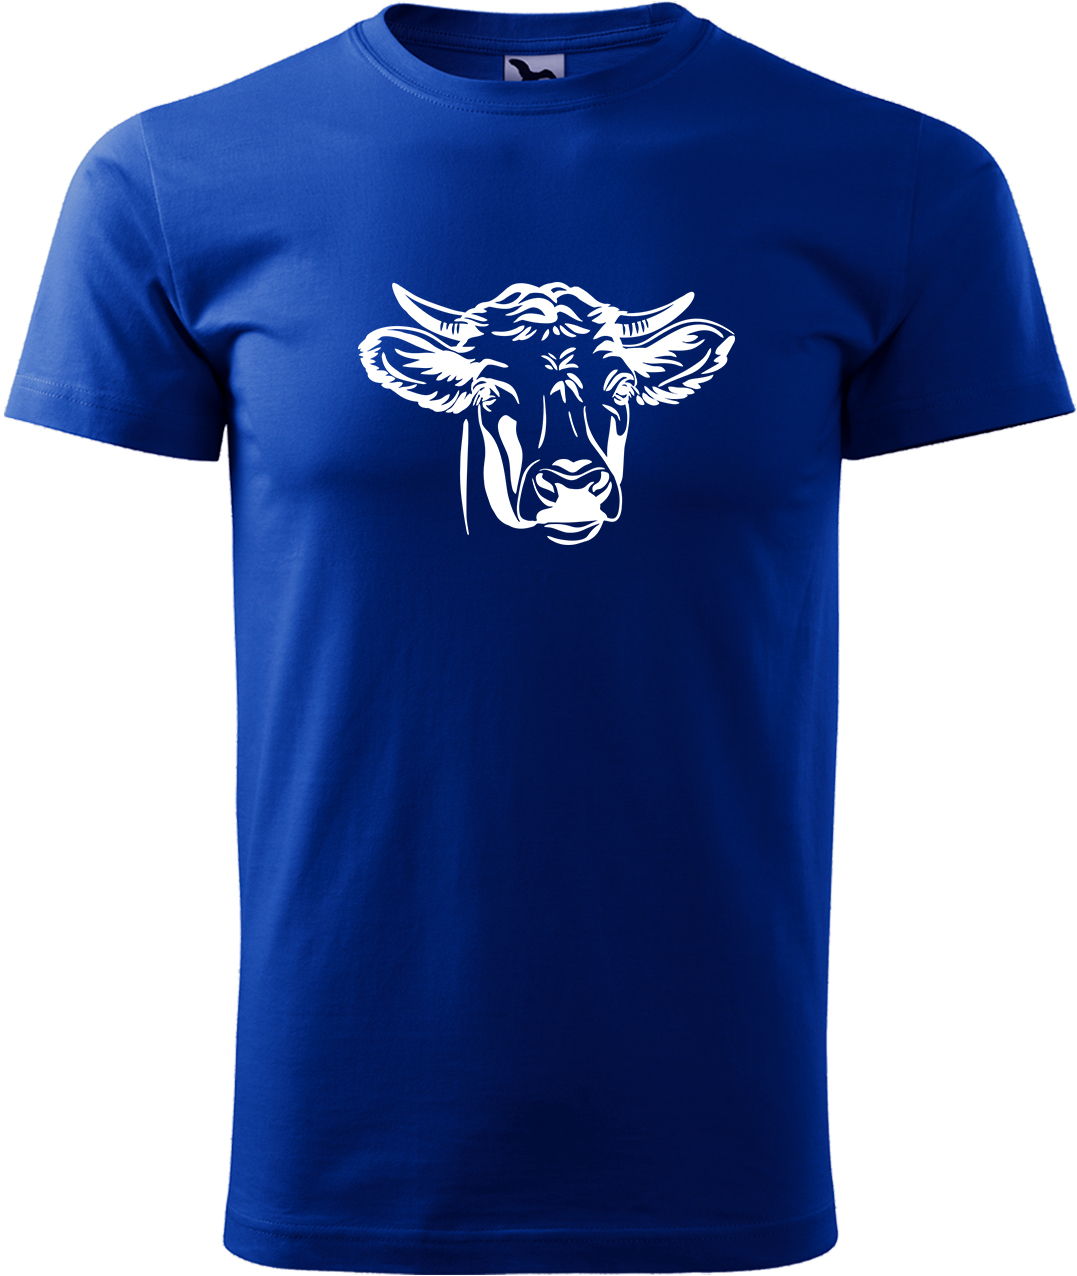 Pánské tričko s krávou - Hlava krávy Velikost: M, Barva: Královská modrá (05), Střih: pánský